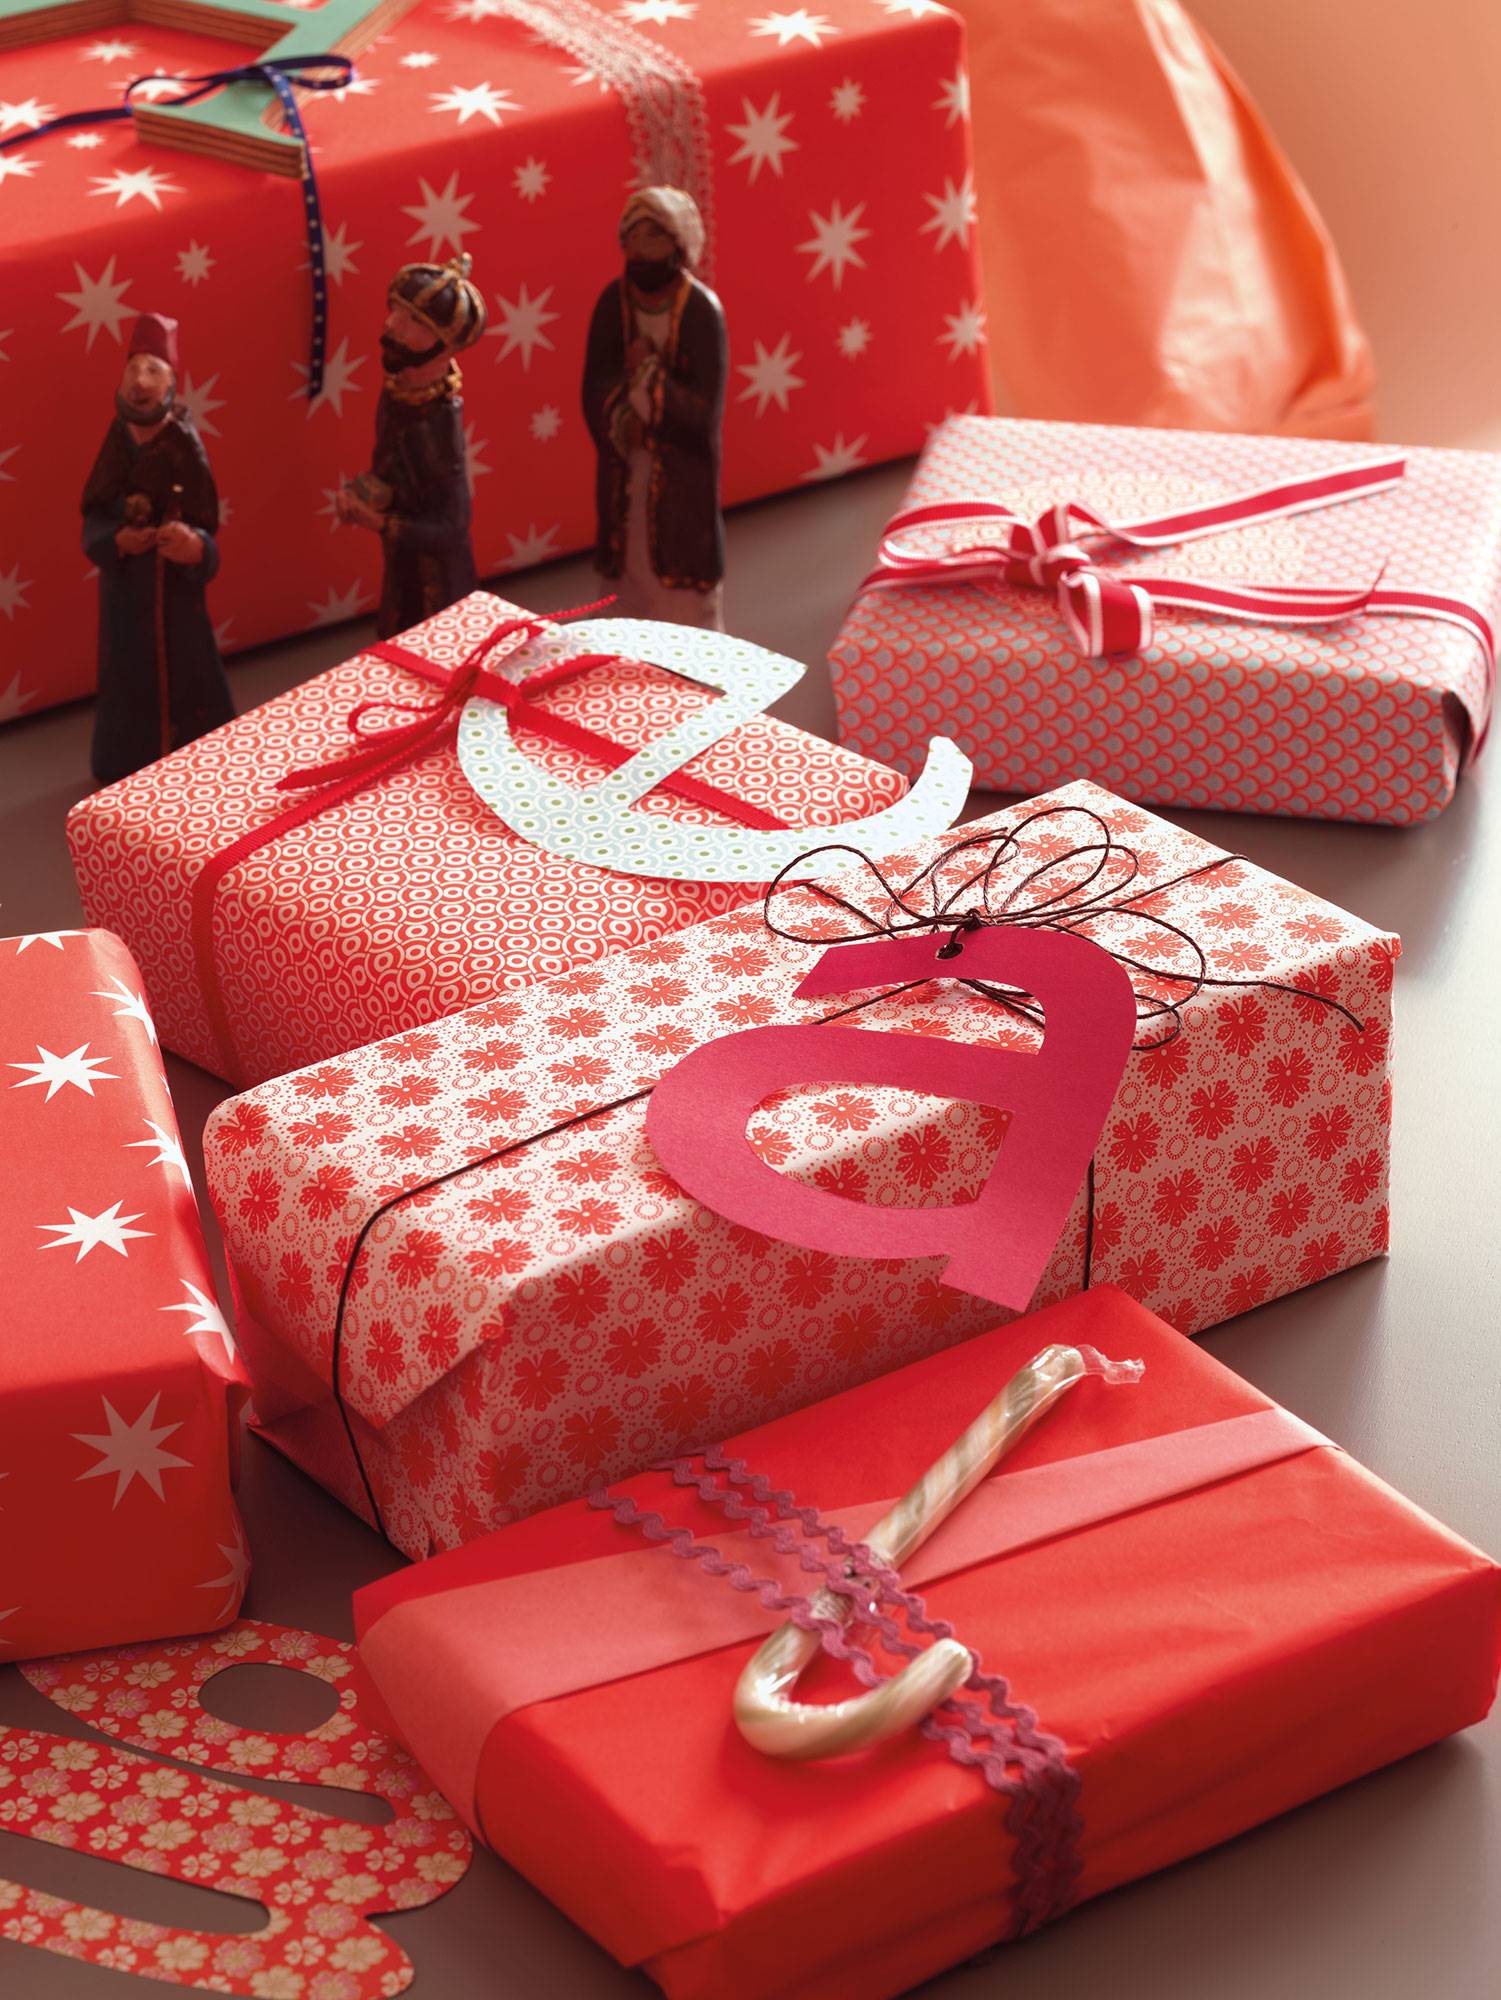 Detalle de regalos de Navidad con papeles en rojo y letras hechas con cartón